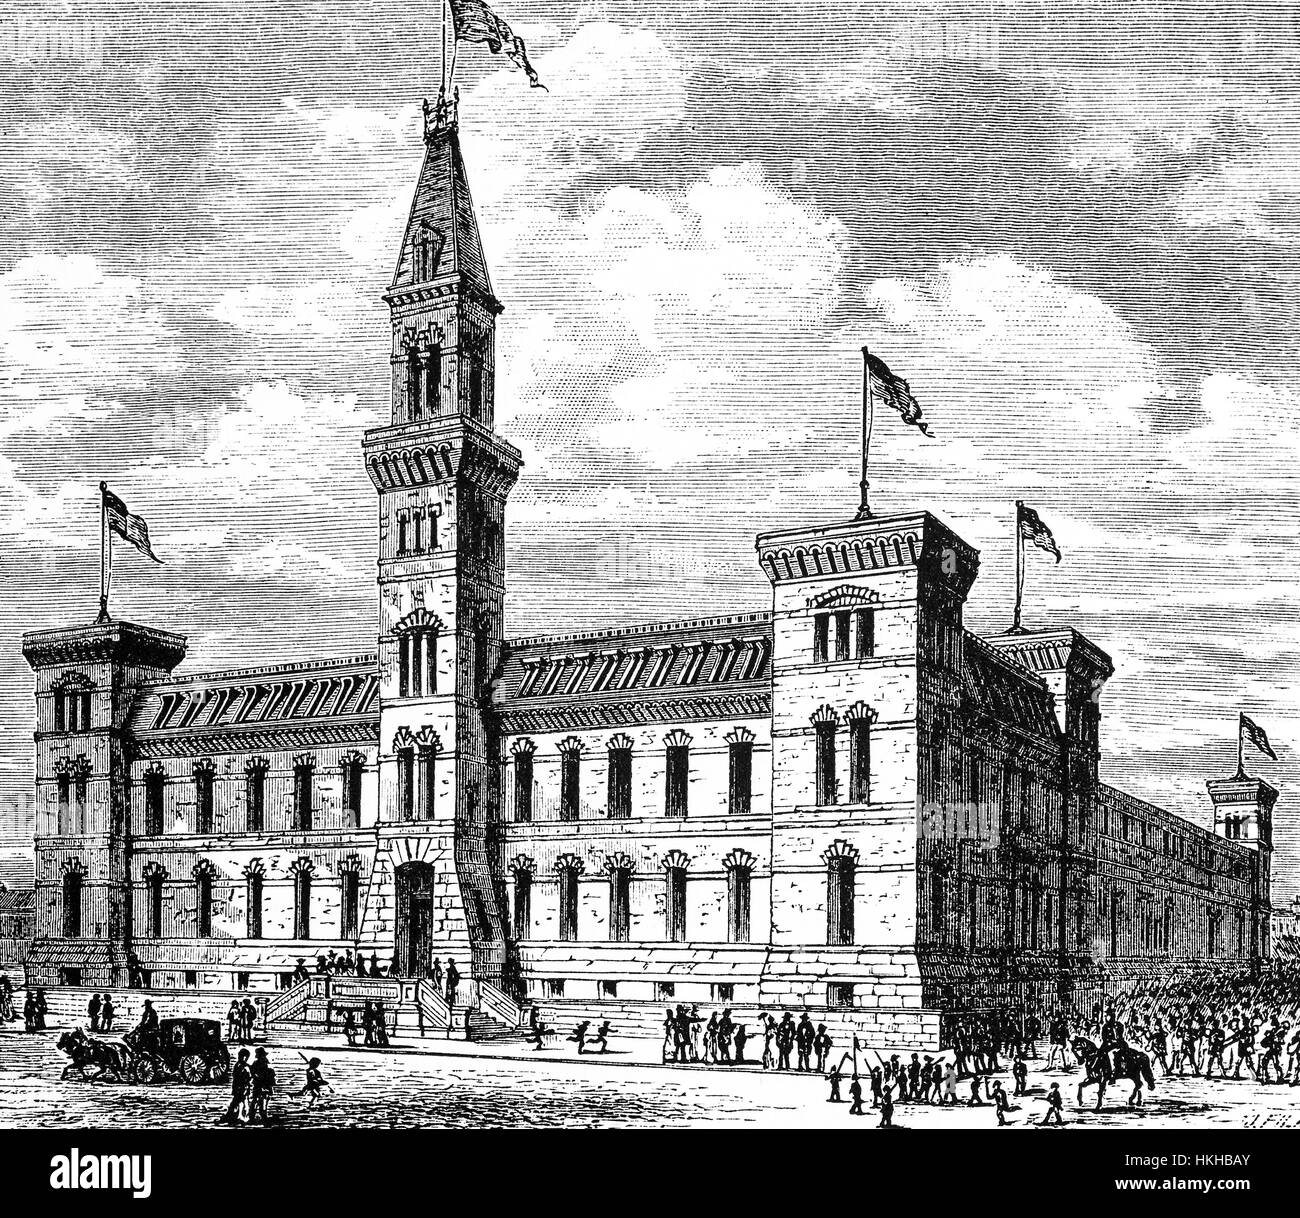 1879: die siebte Regiment Armory, auch bekannt als Park Avenue Armory ist ein historischen Backstein-Gebäude, das füllt einen ganzen Häuserblock auf New Yorks Upper East Side, es diente ursprünglich als Sitz und Verwaltungsgebäude für die 7. New Yorker Miliz Regiment, Vereinigte Staaten von Amerika Stockfoto